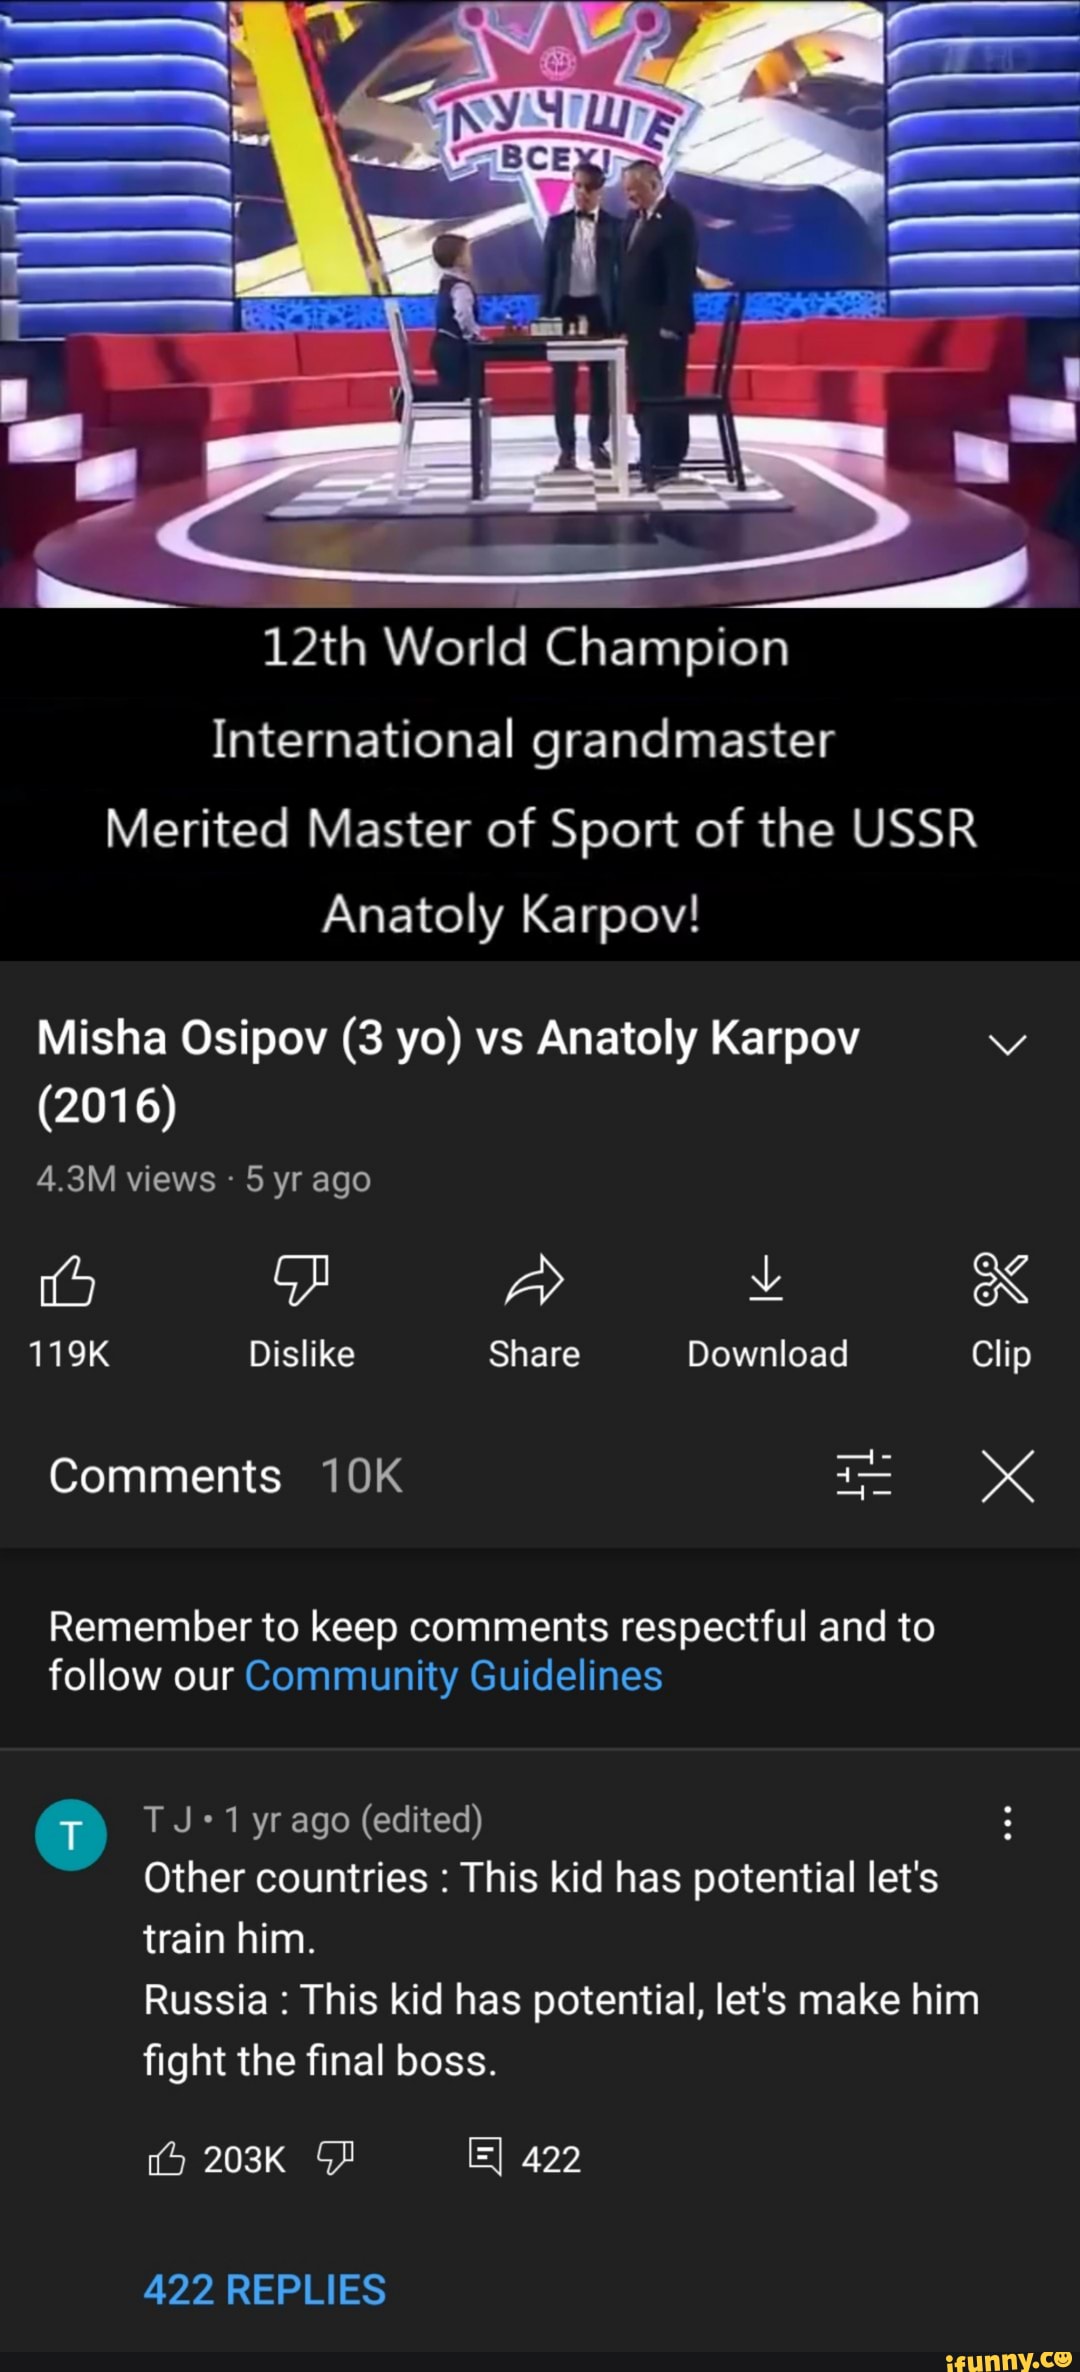 Mortal Kombat: Misha Osipov (Lichess 1370) vs Anatoly Karpov (FIDE